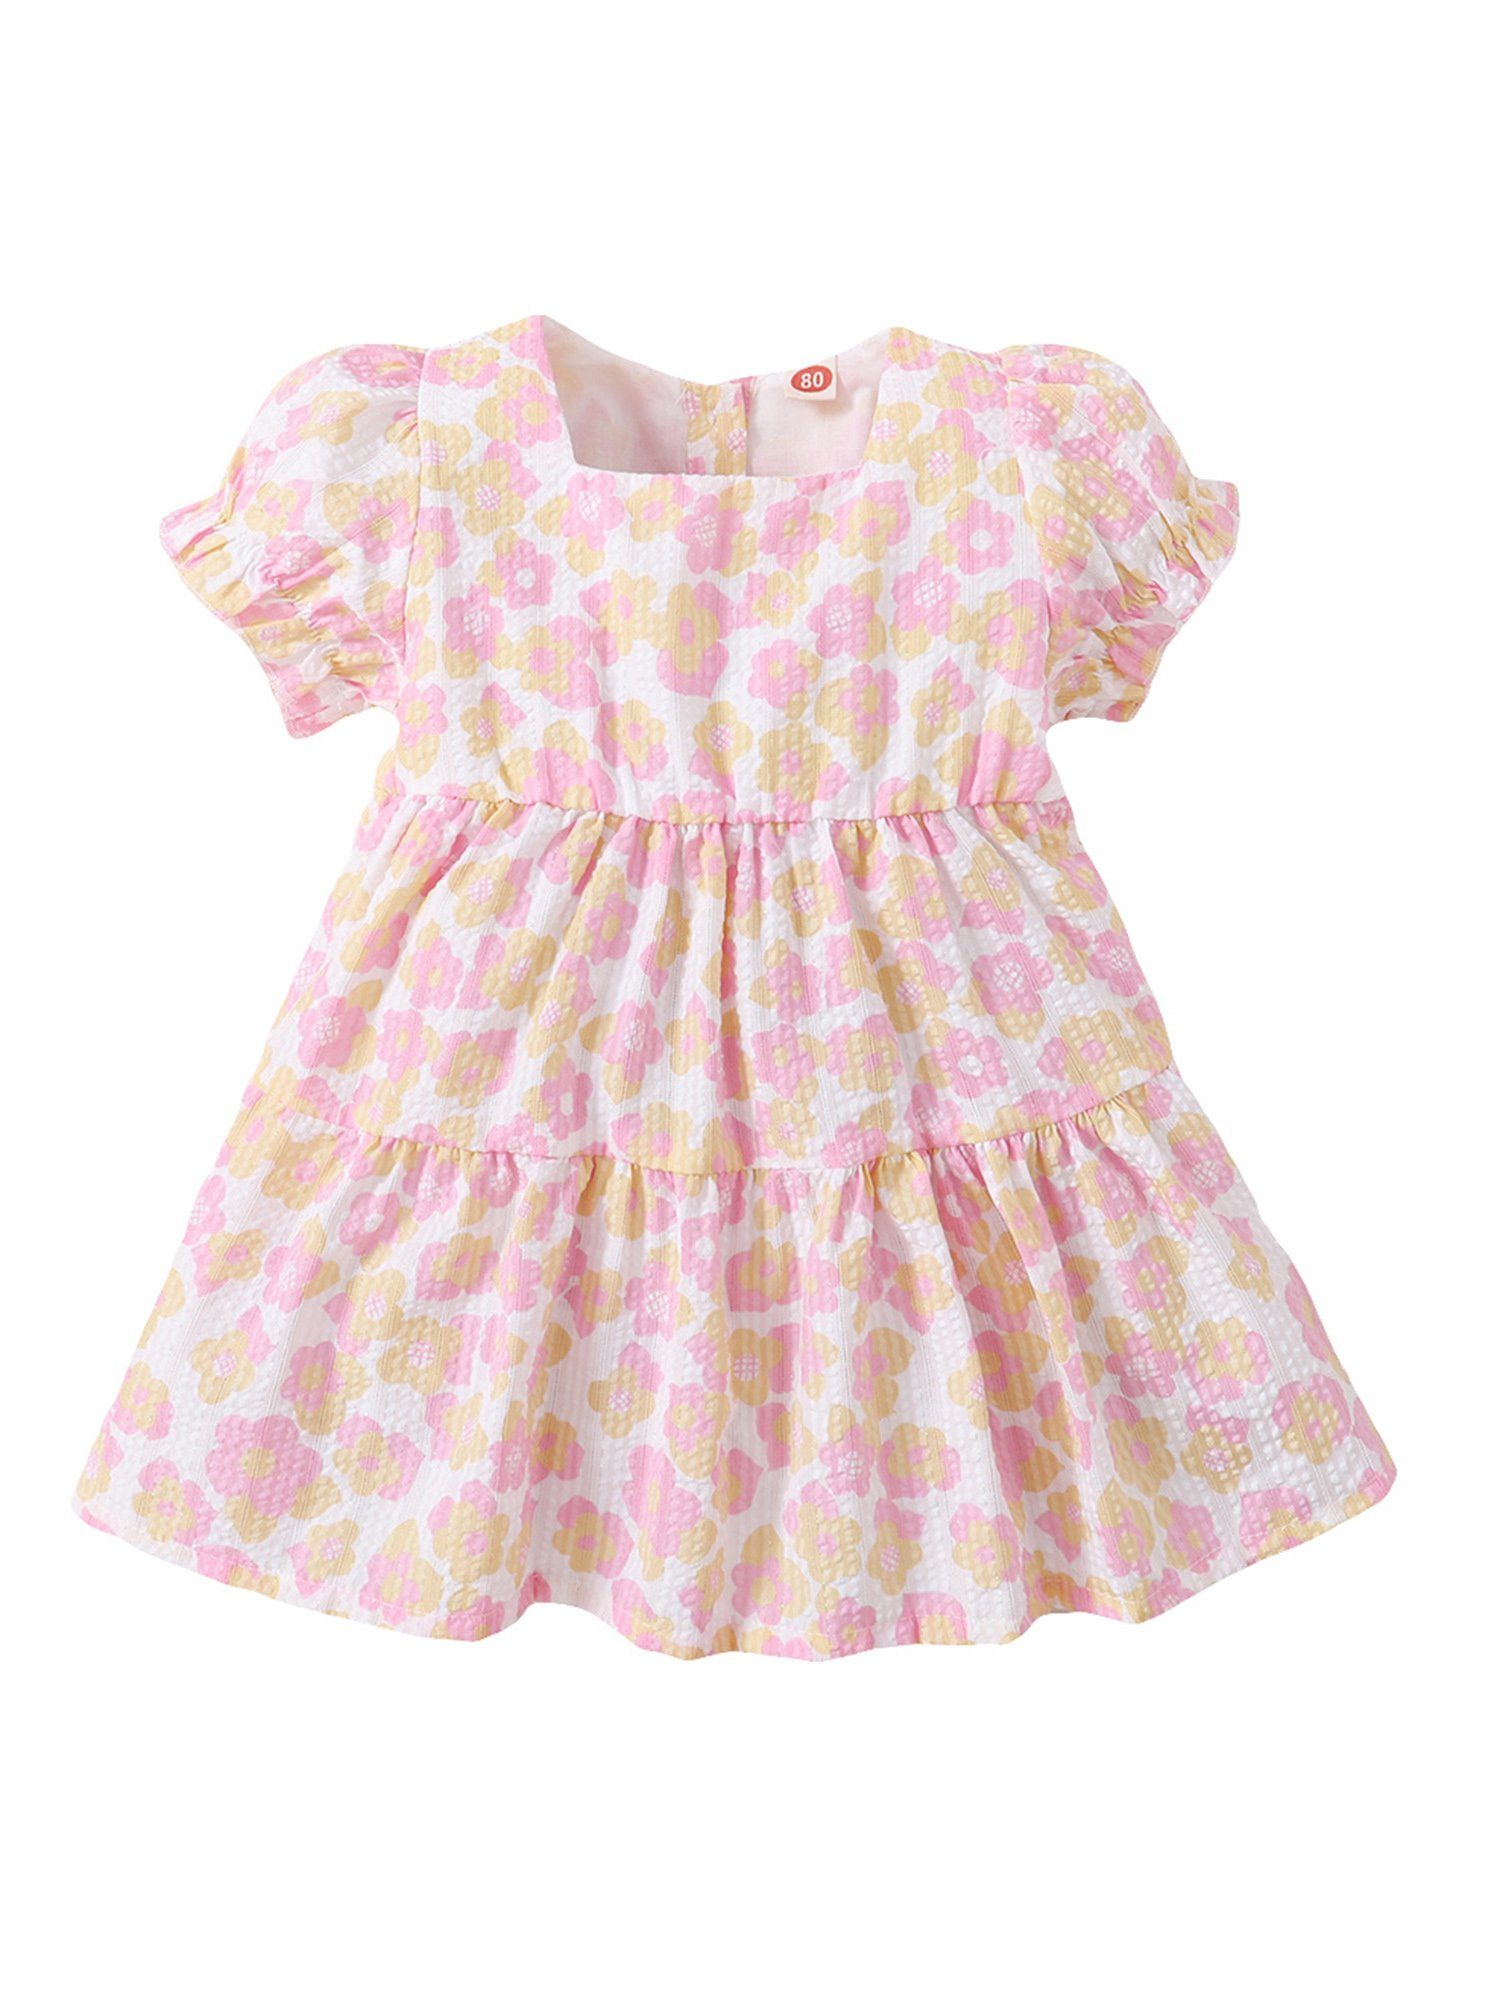 Kinder Mädchen (Gr. 50 - 92) Lapastyle Partykleid Baby Mädchen Rosa Blumendruck Kleid